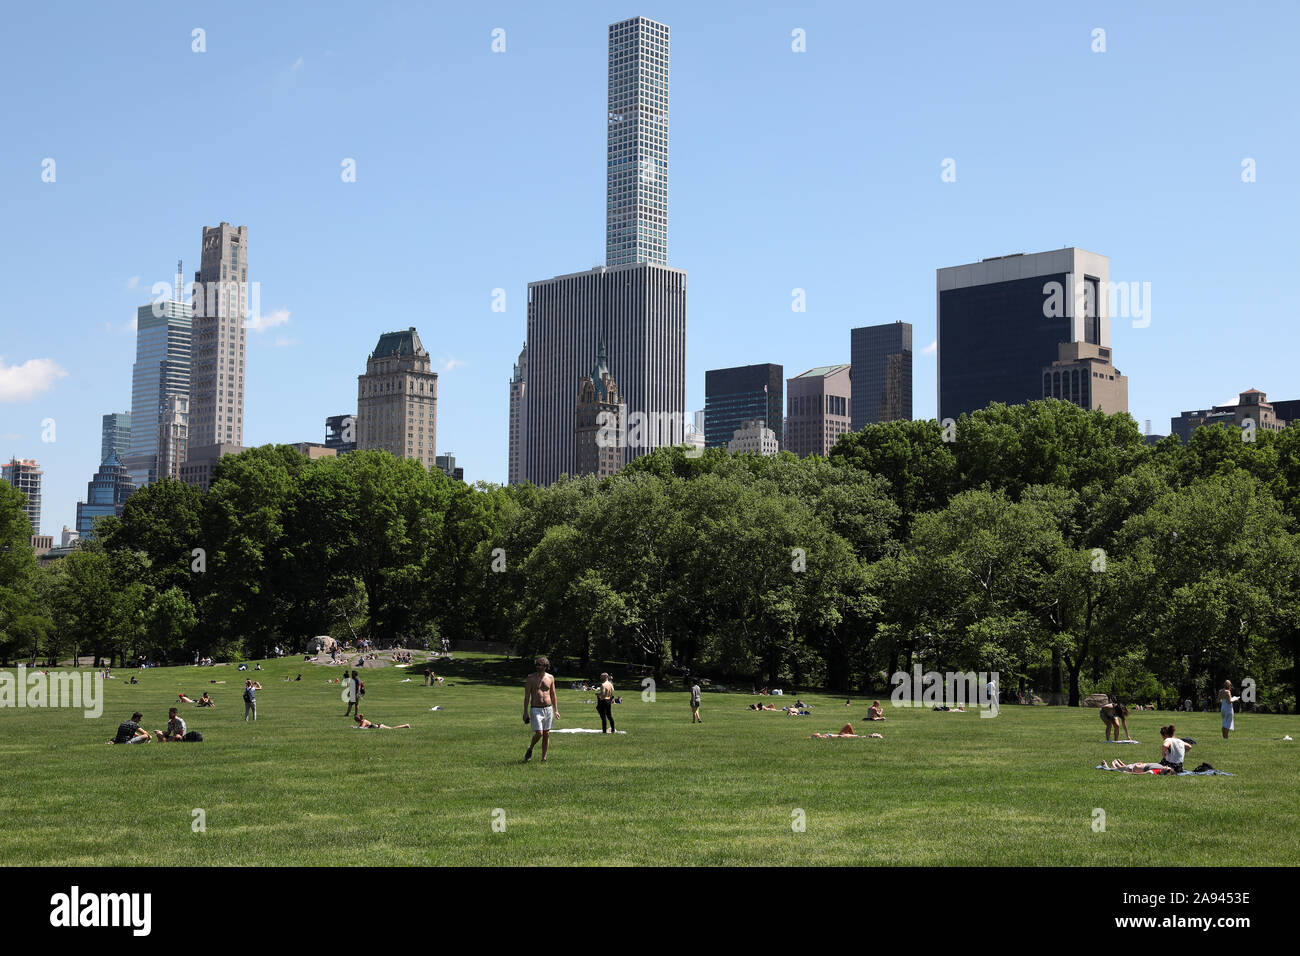 Menschen auf einen sommerlichen Tag im Central Park mit Skyline Kulisse entspannen Stockfoto